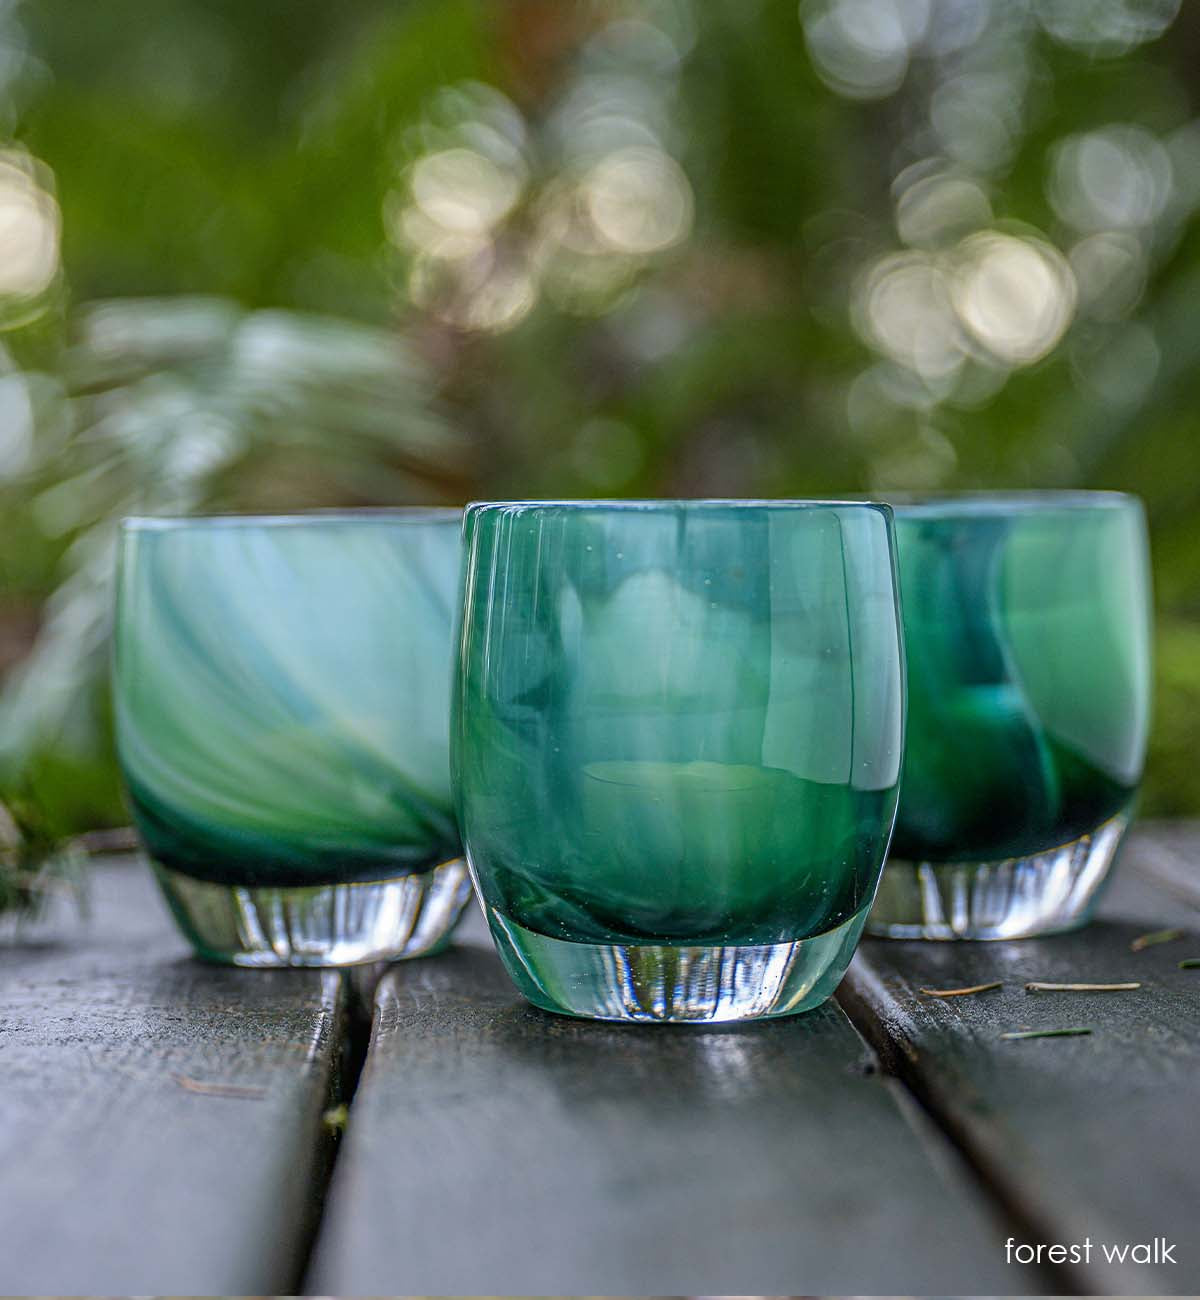 forest walk, translucent green swirl hand-blown glass votive candle holder.